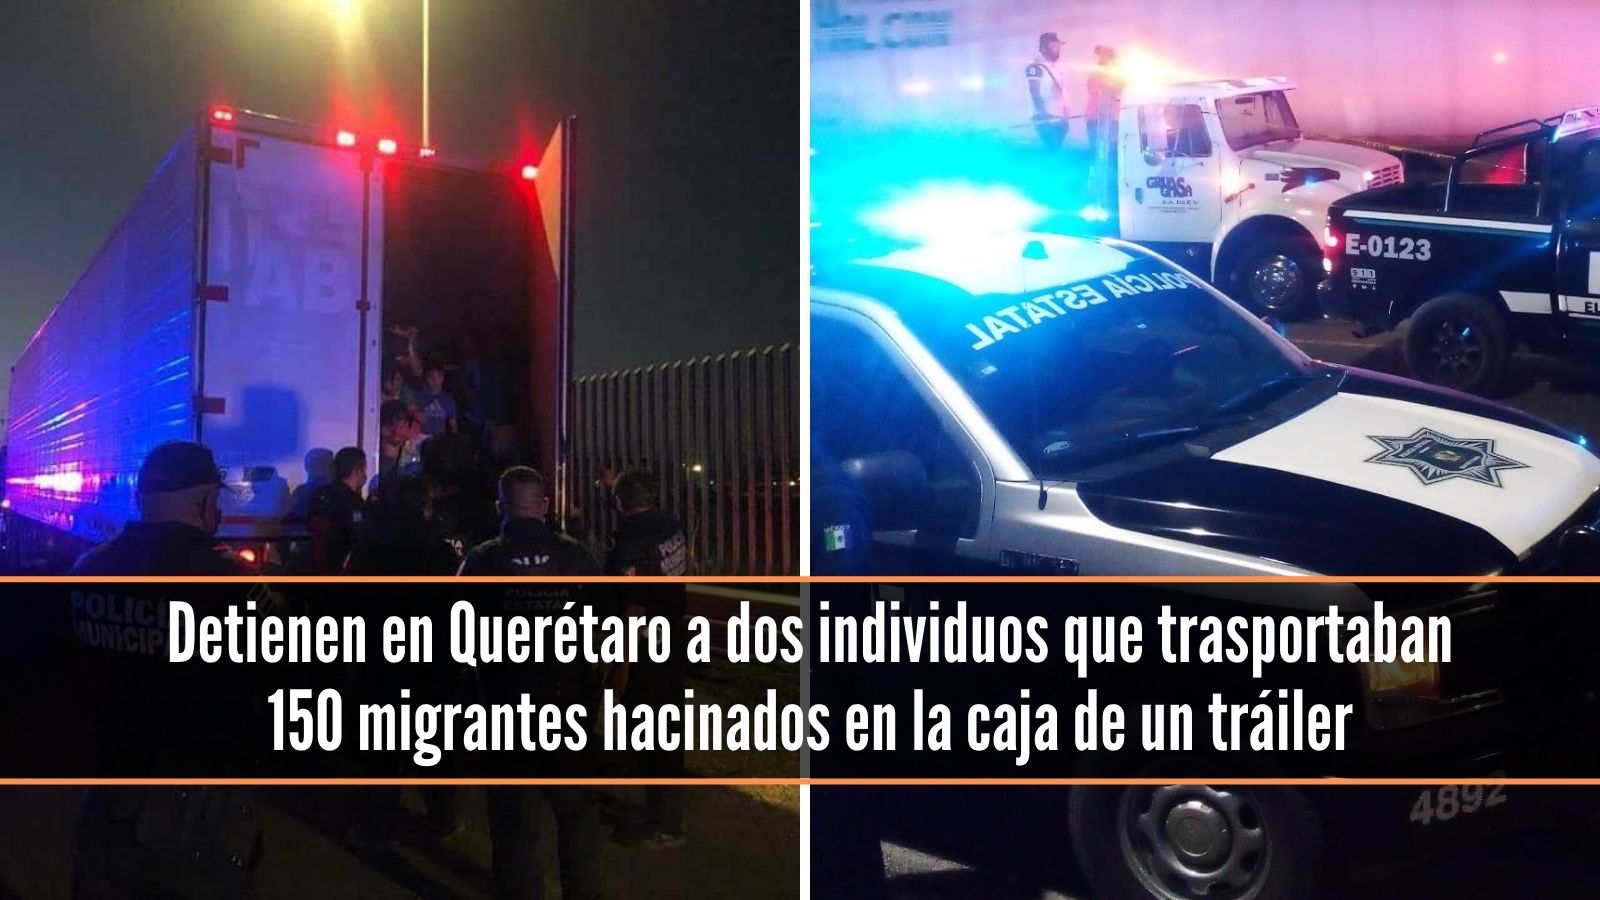 Detienen tráiler con 150 migrantes en Querétaro